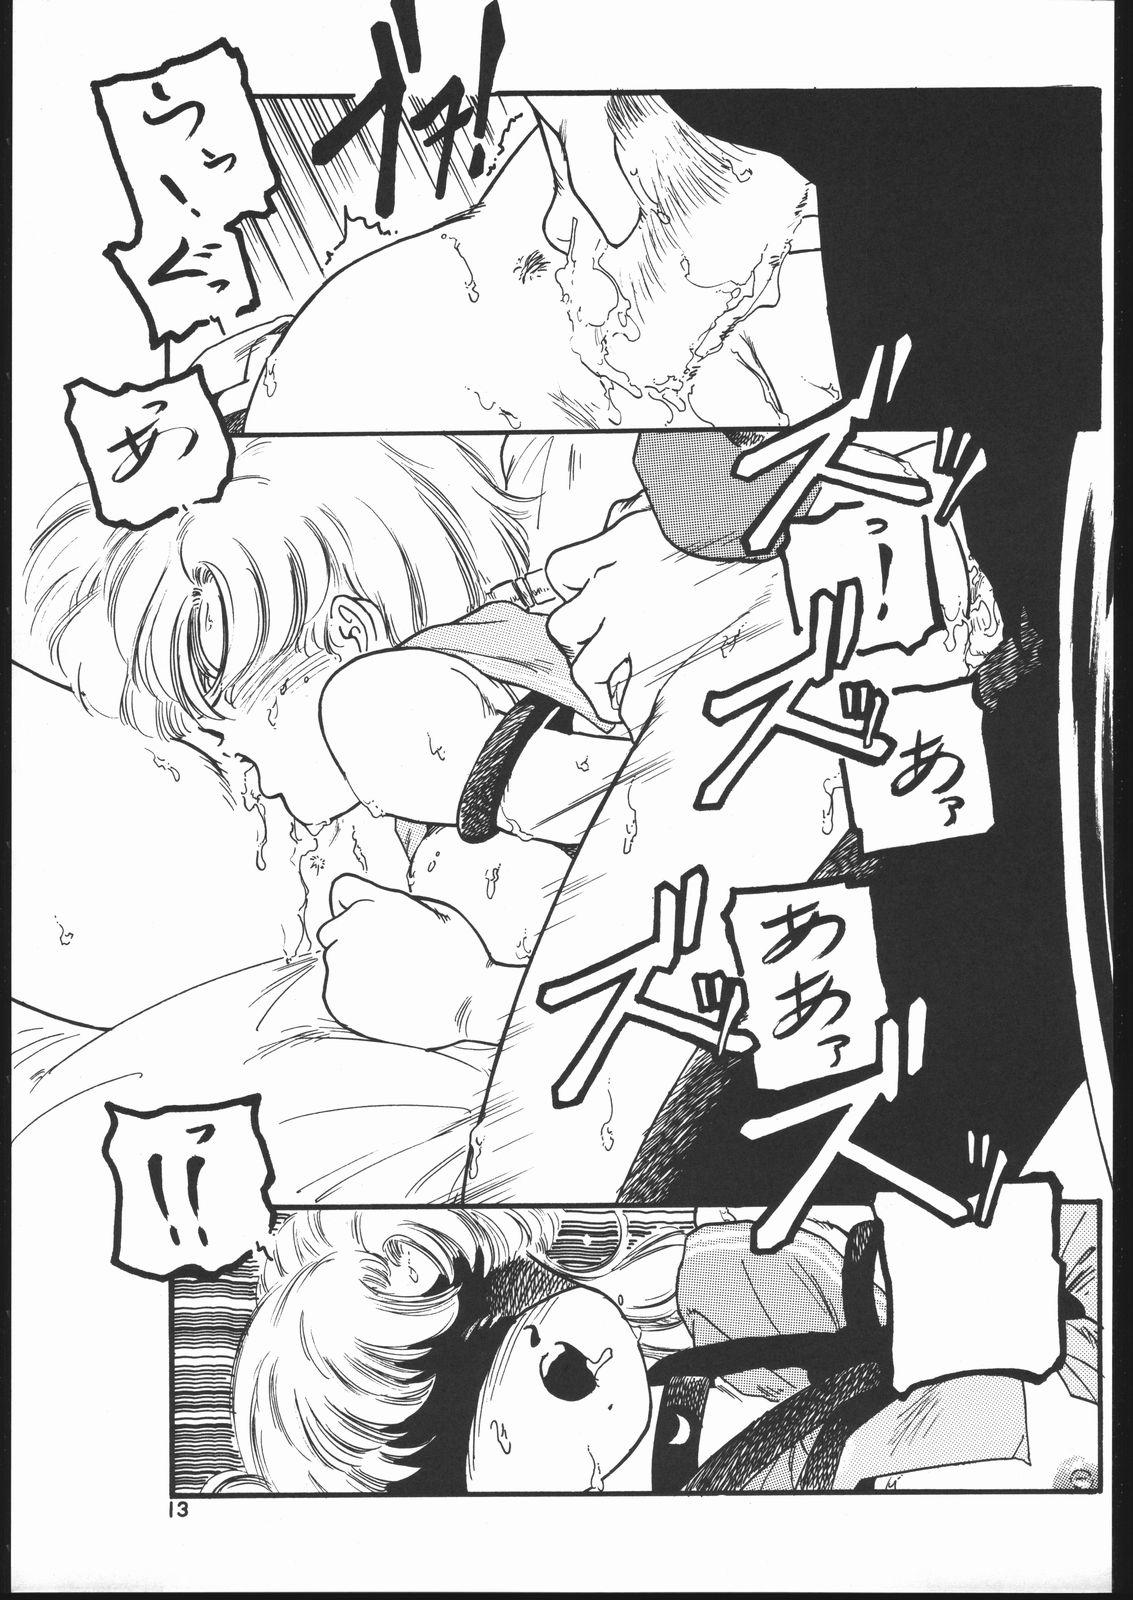 Ducha Gekkou Endymion 2 - Sailor moon 18yo - Page 12